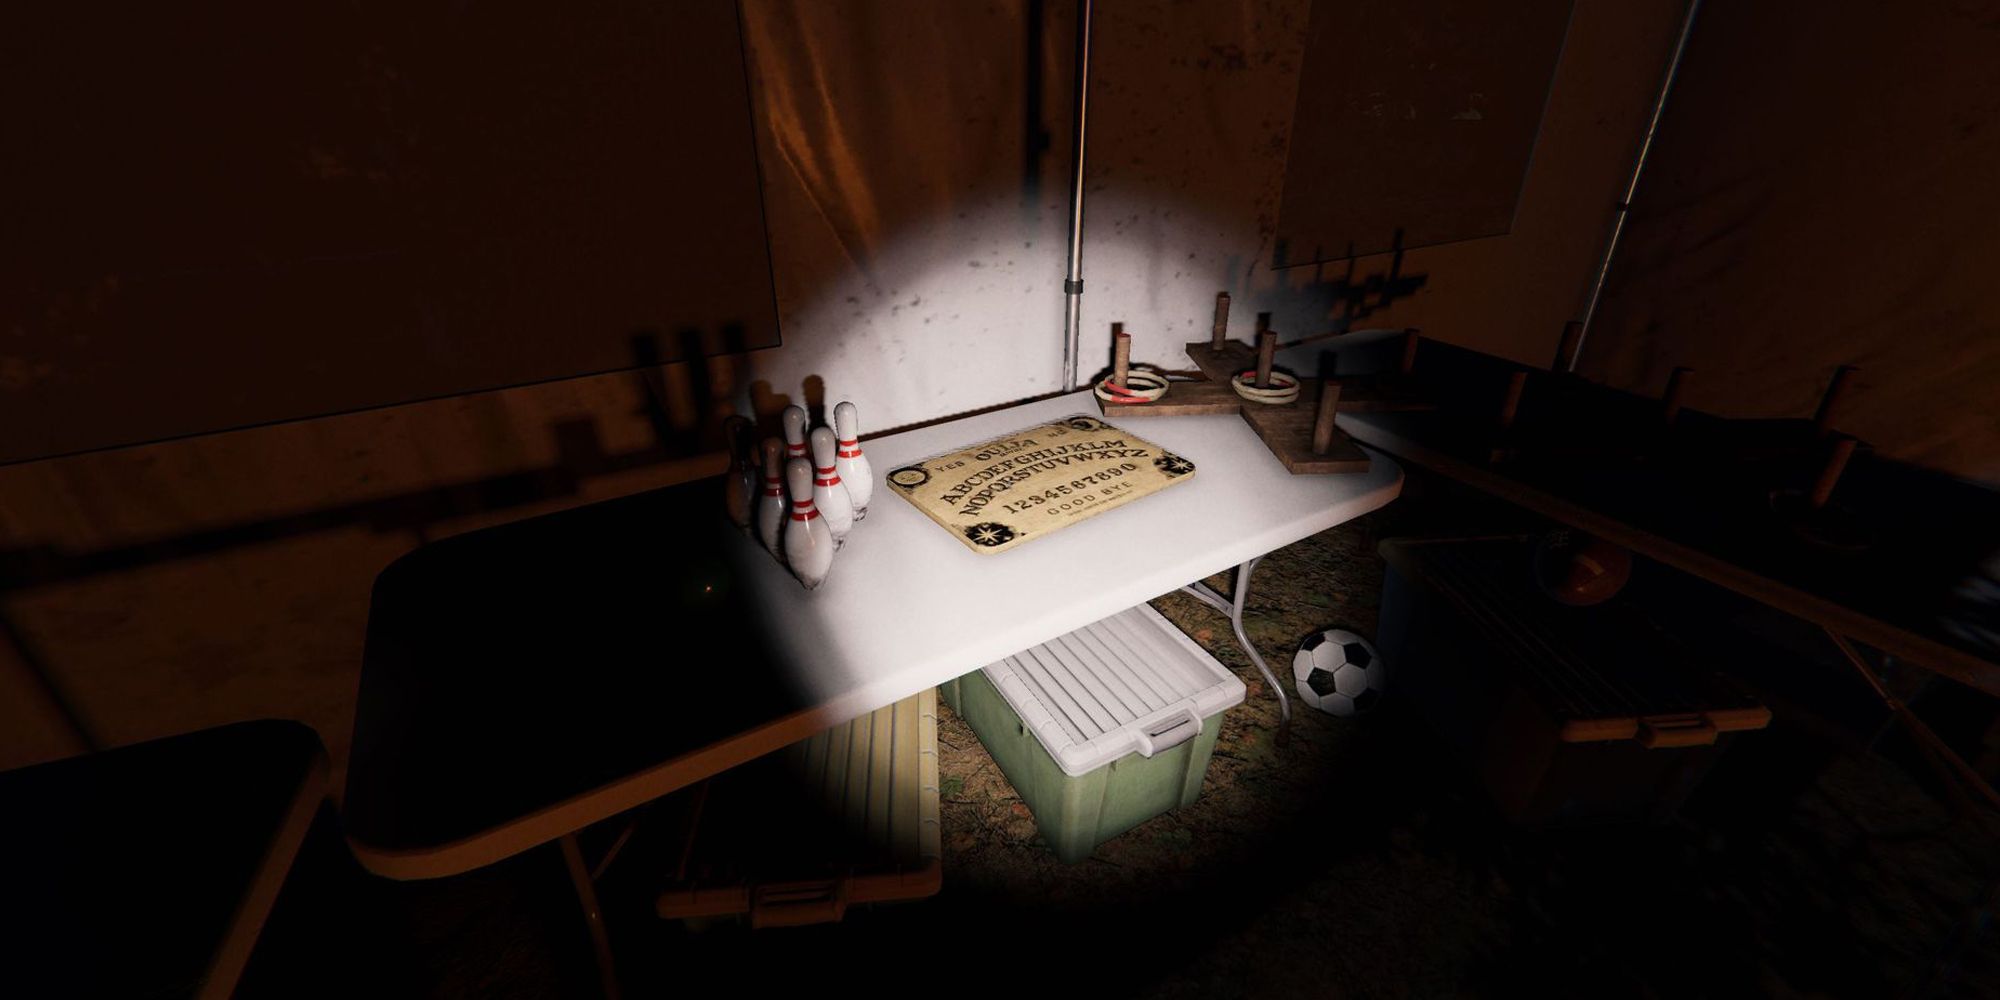 Изображение показывает бусину на белом столе рядом с кеглями и игрой с обручем. Это из Кемпа Вудвинд в Фазмофобии.